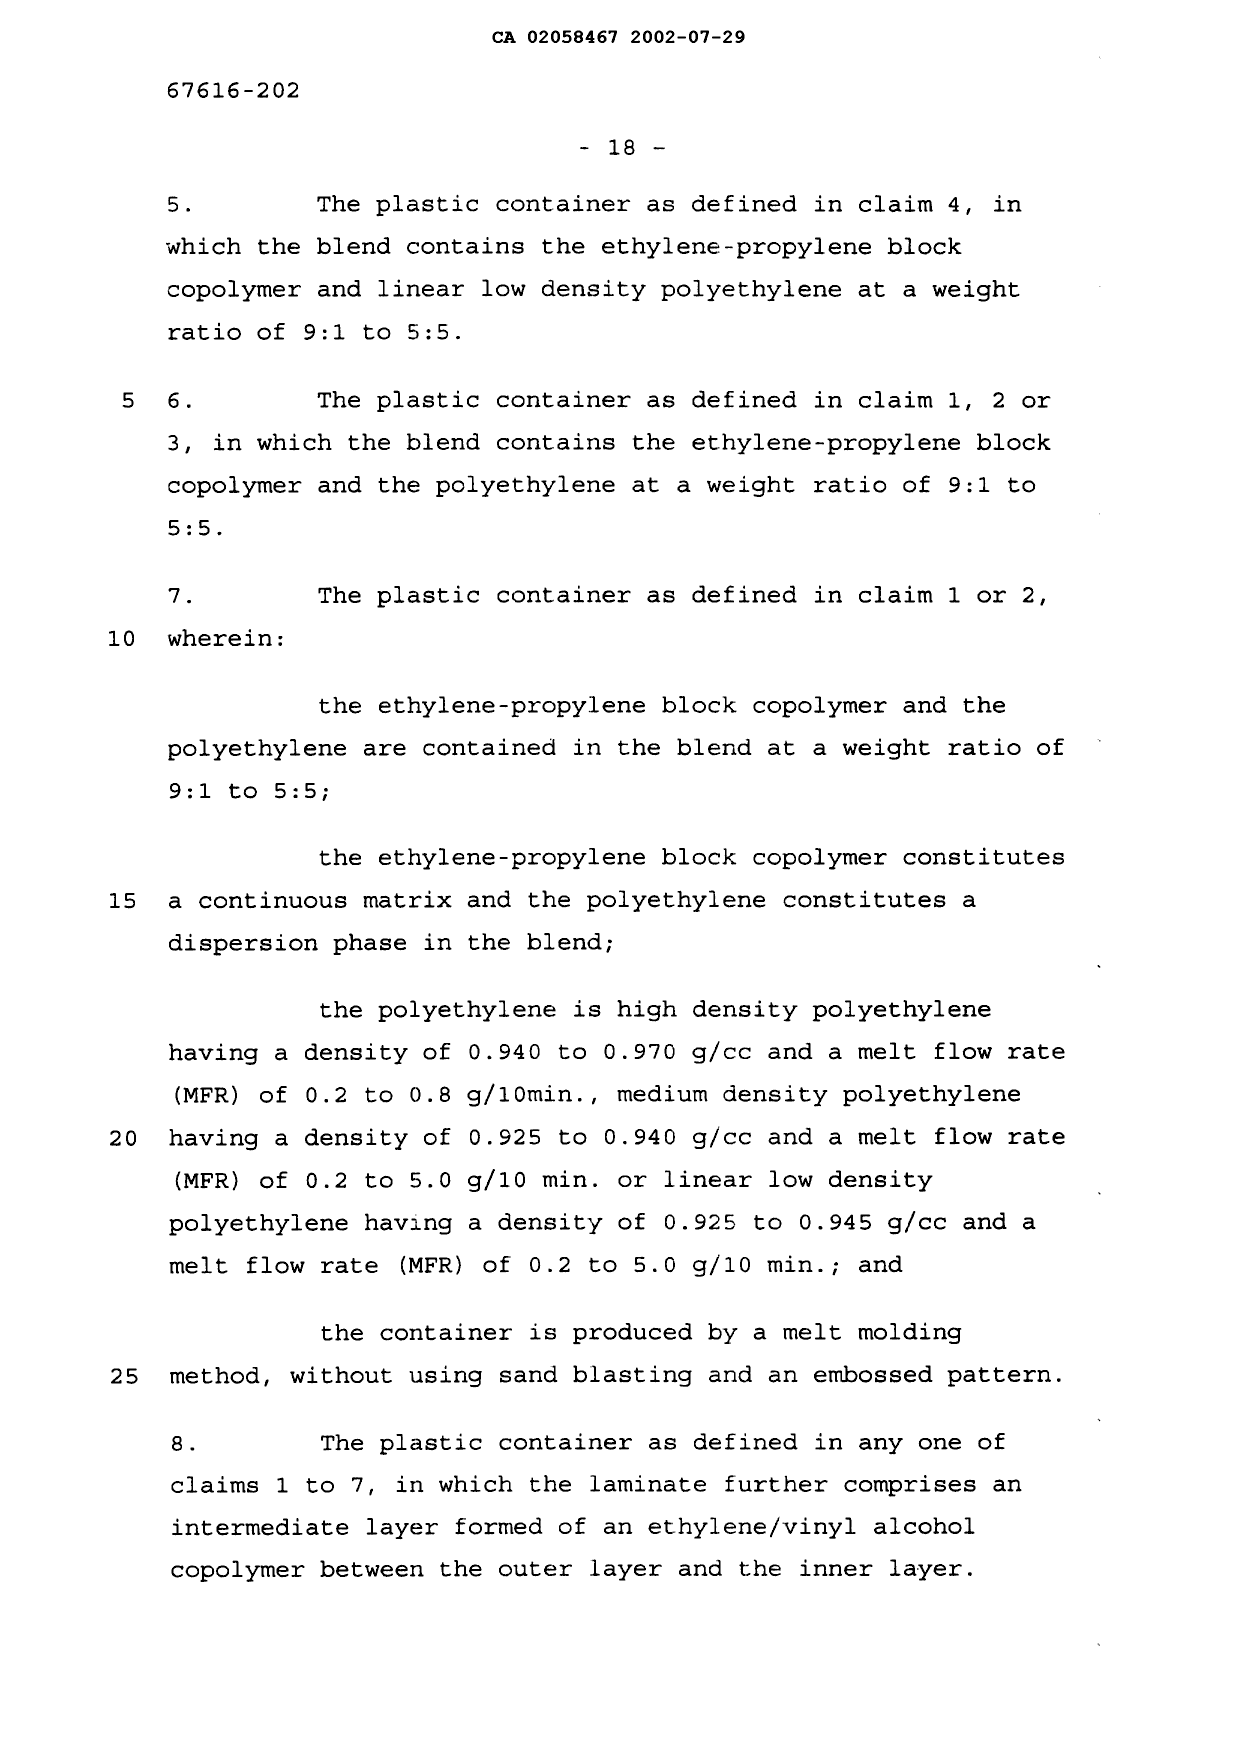 Canadian Patent Document 2058467. Description 20030422. Image 2 of 3